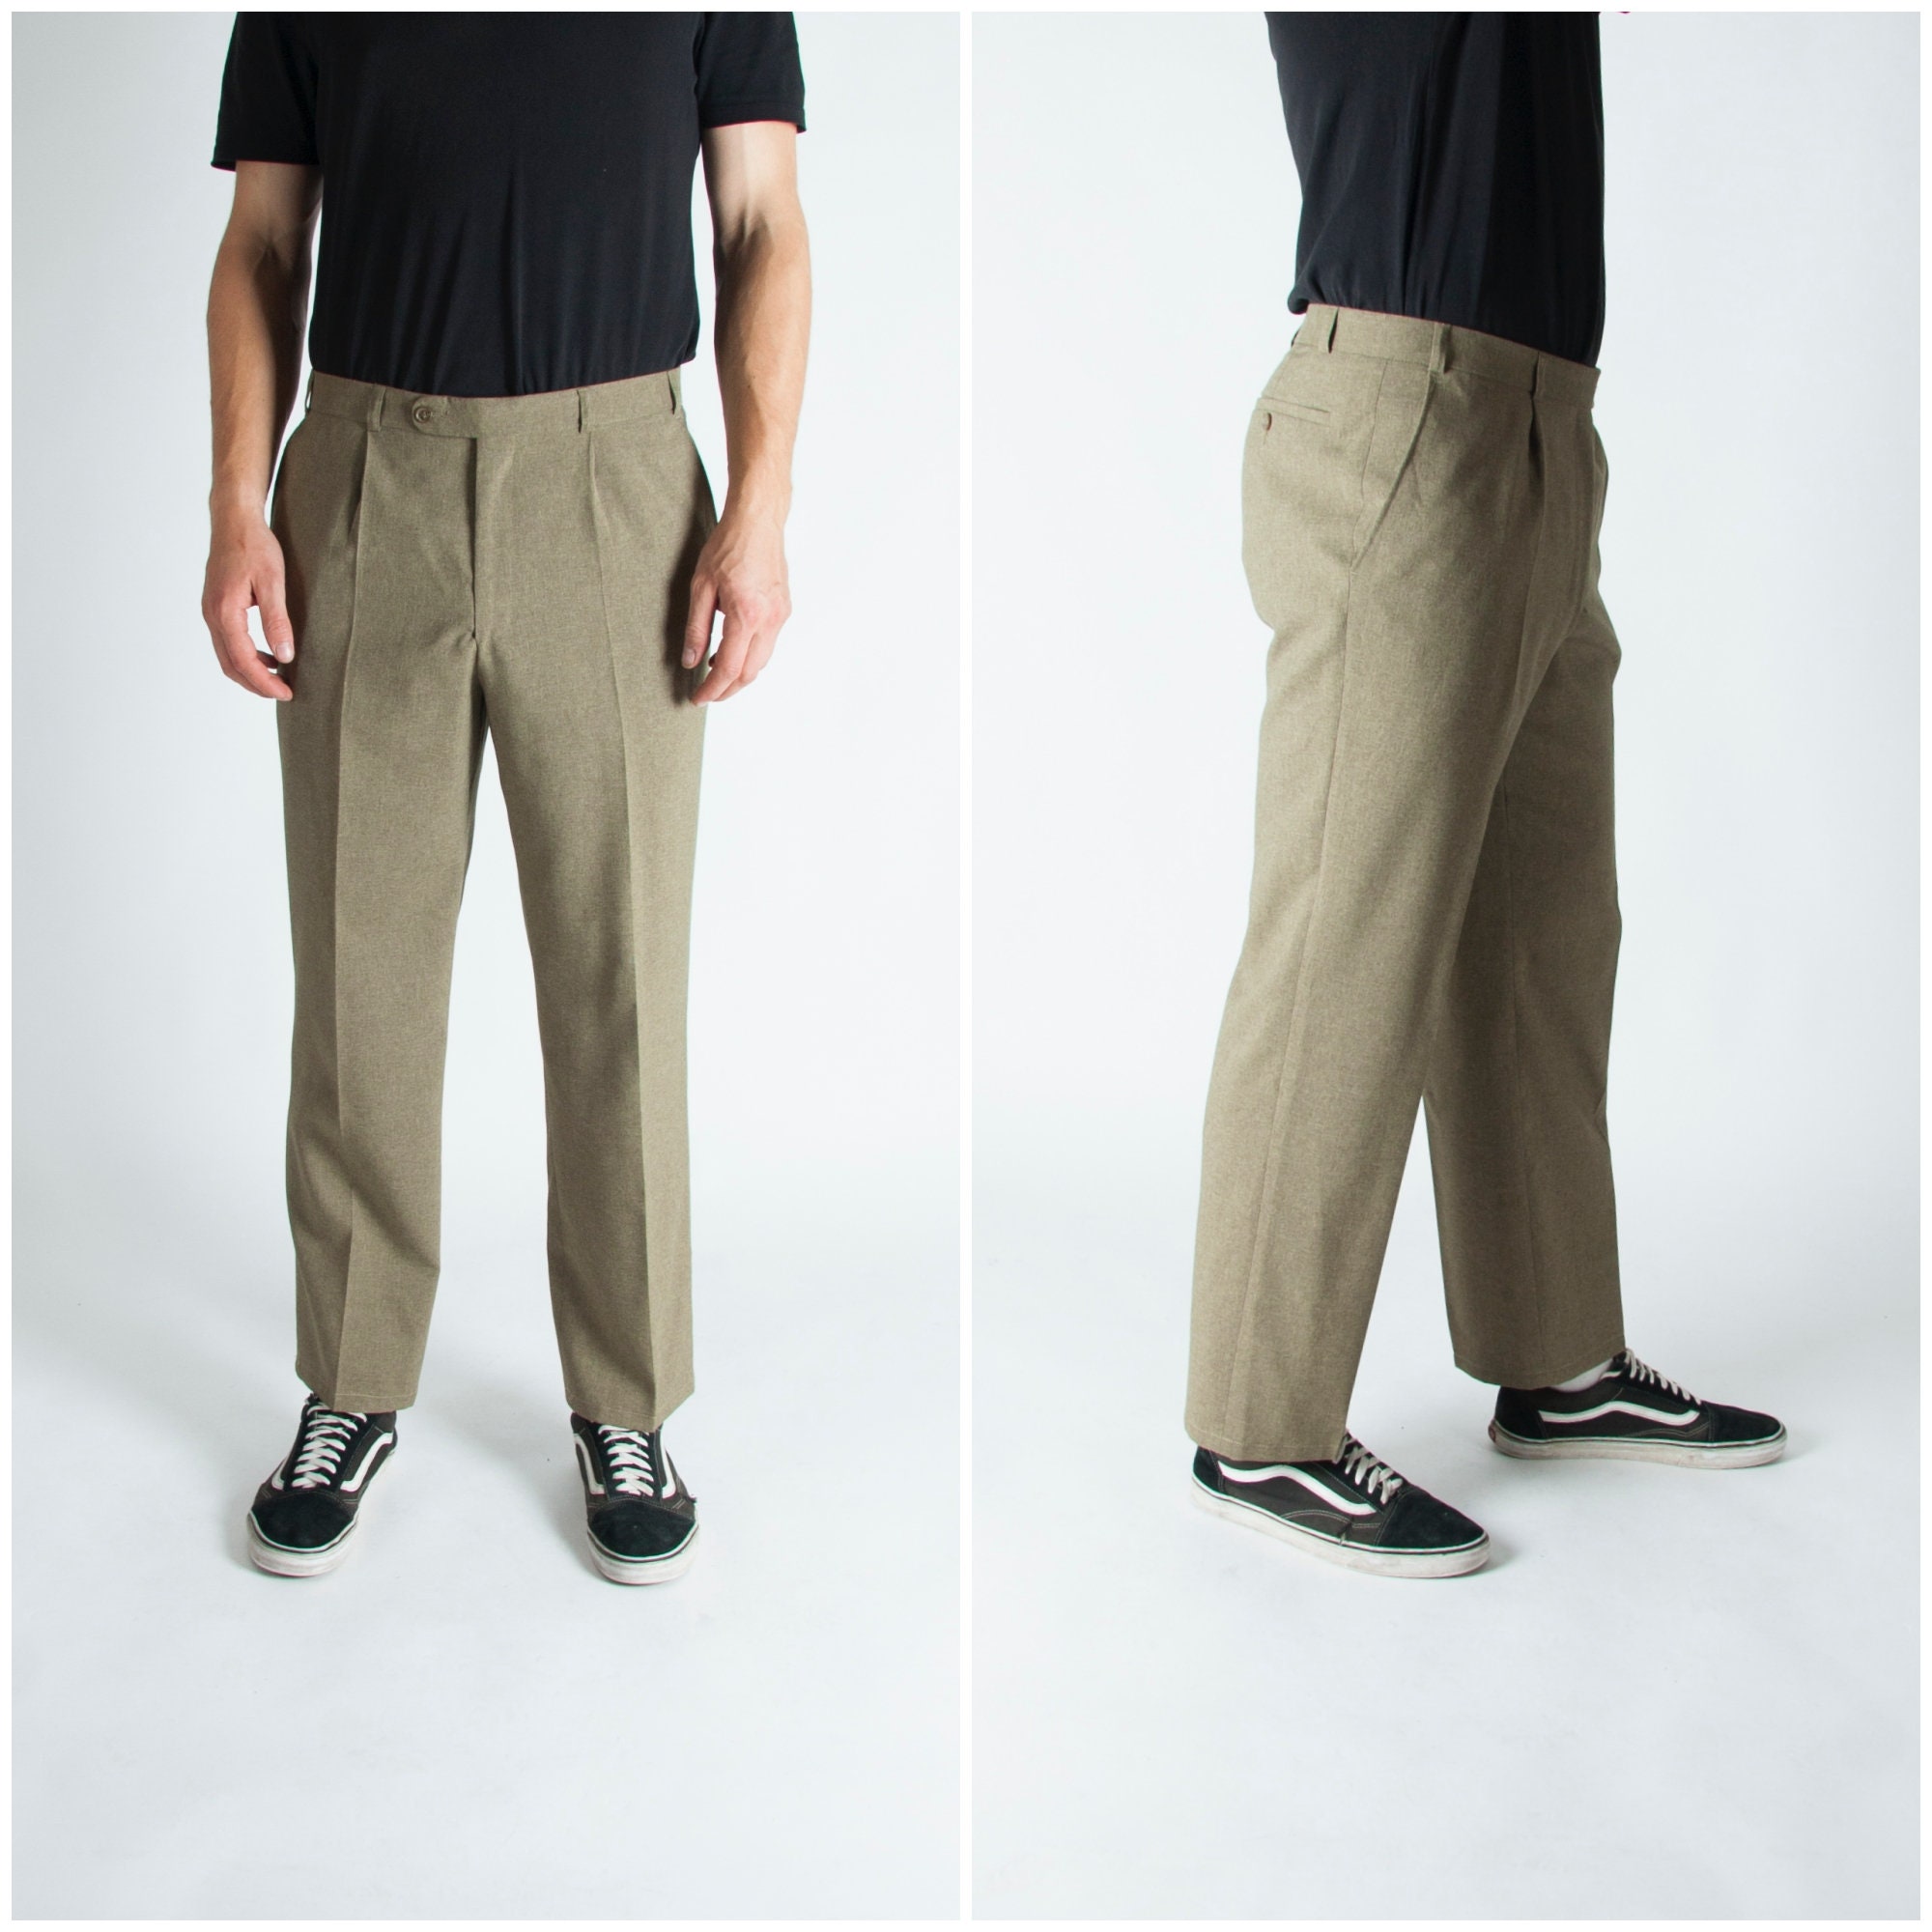 80s Suit Pants Men's XL 36 Waist Khaki Suit Trousers Olive Green Business Pants Men Size XL Vintage Pleated Dress Pants Mens Classic Pants